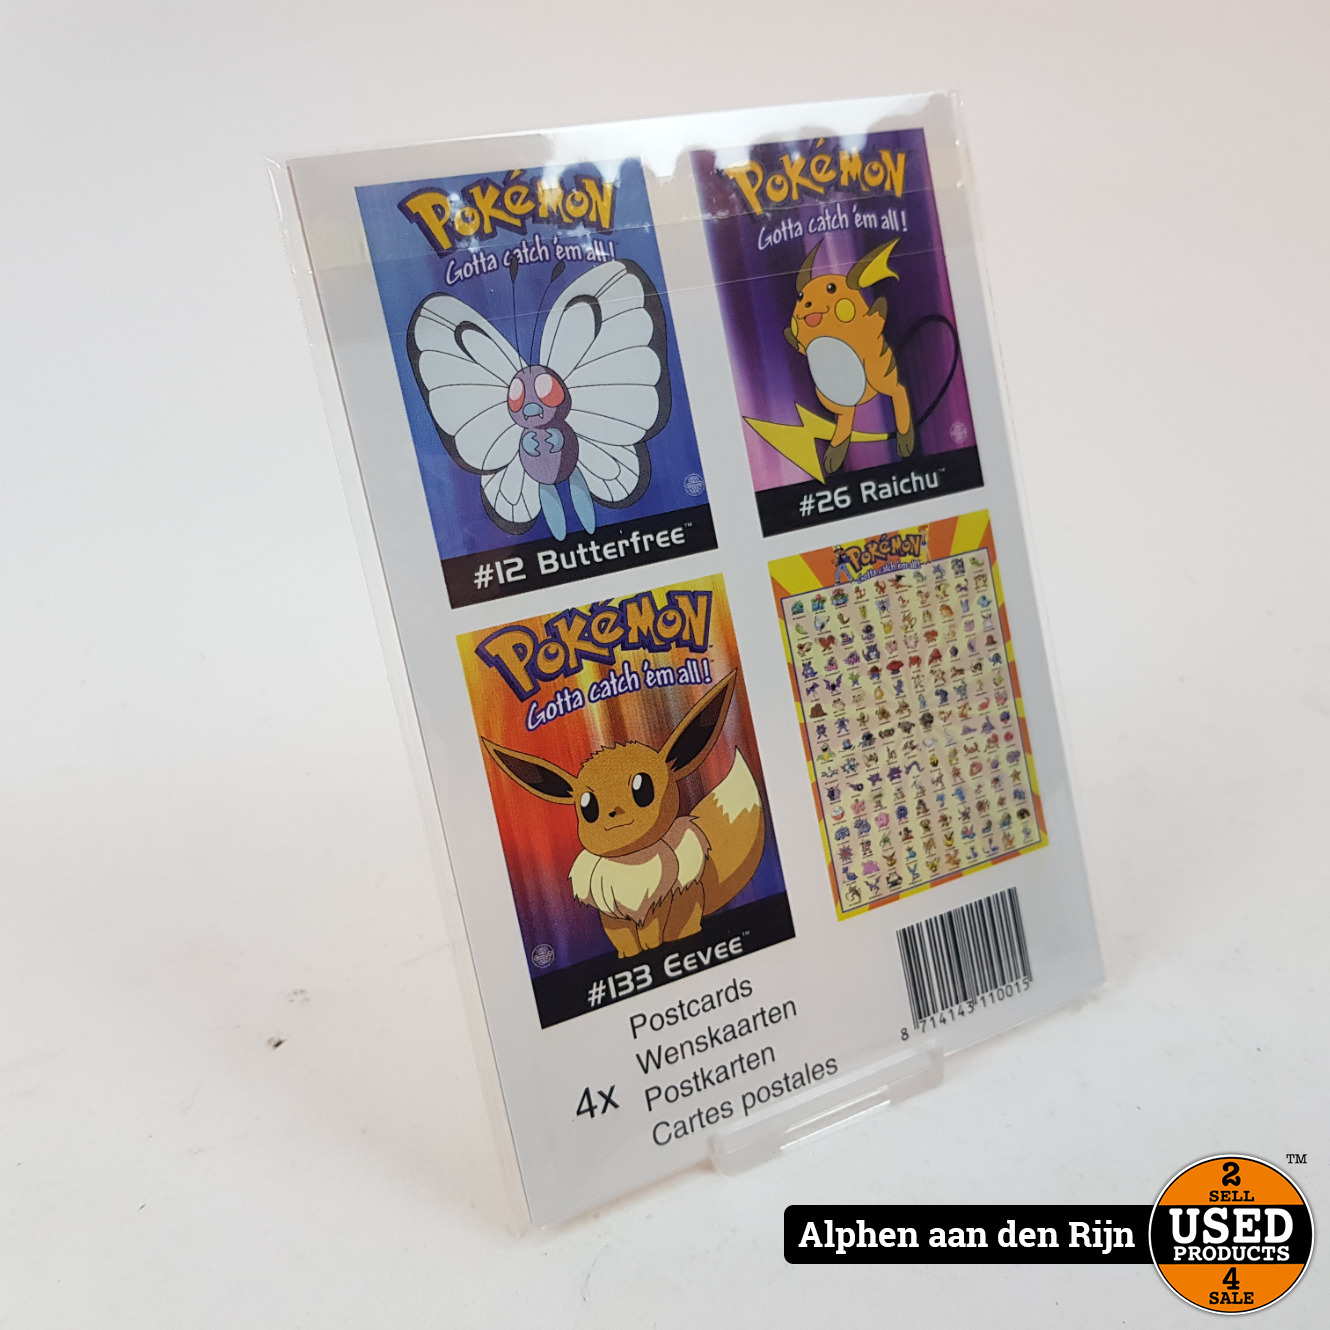 Pokemon kaarten - wenskaarten Origineel Nintendo - 150 pokemon kaart Used Products Alphen aan den Rijn